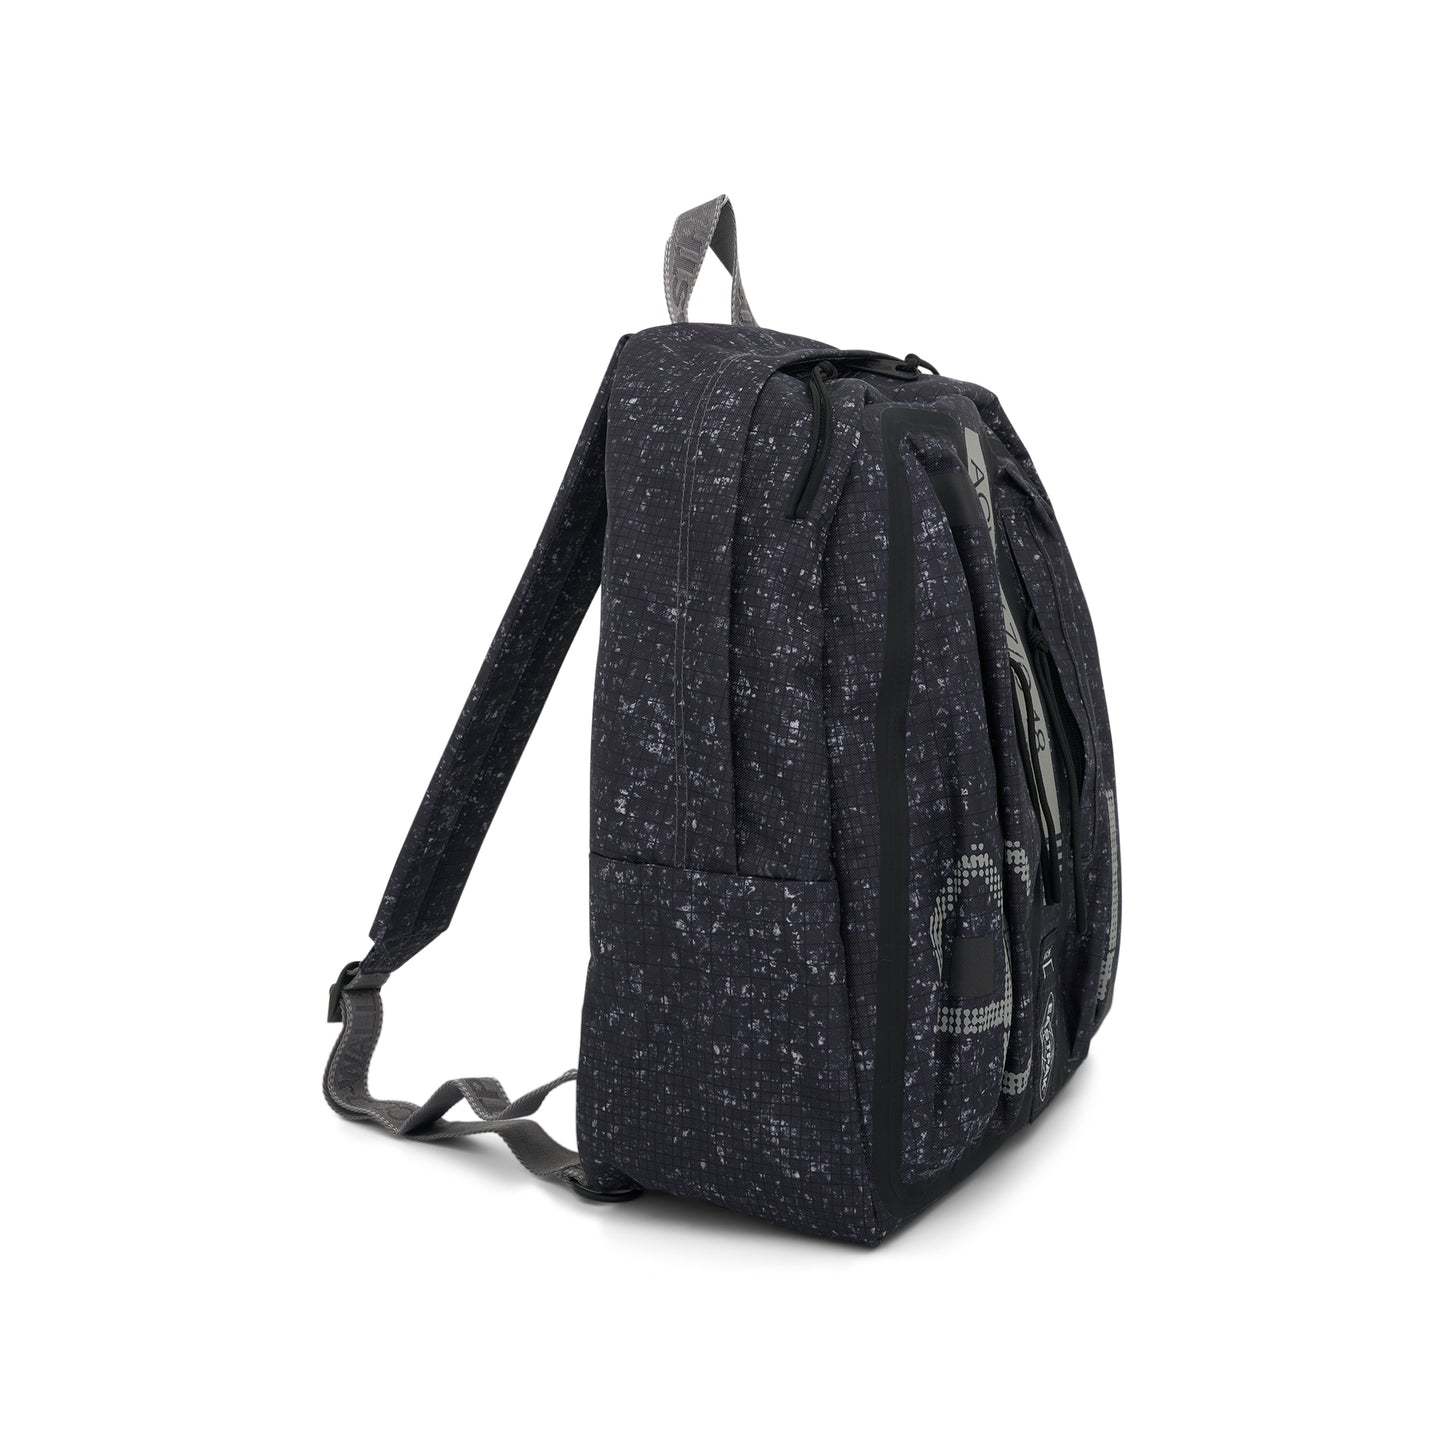 Eastpak Large Backpack in Black